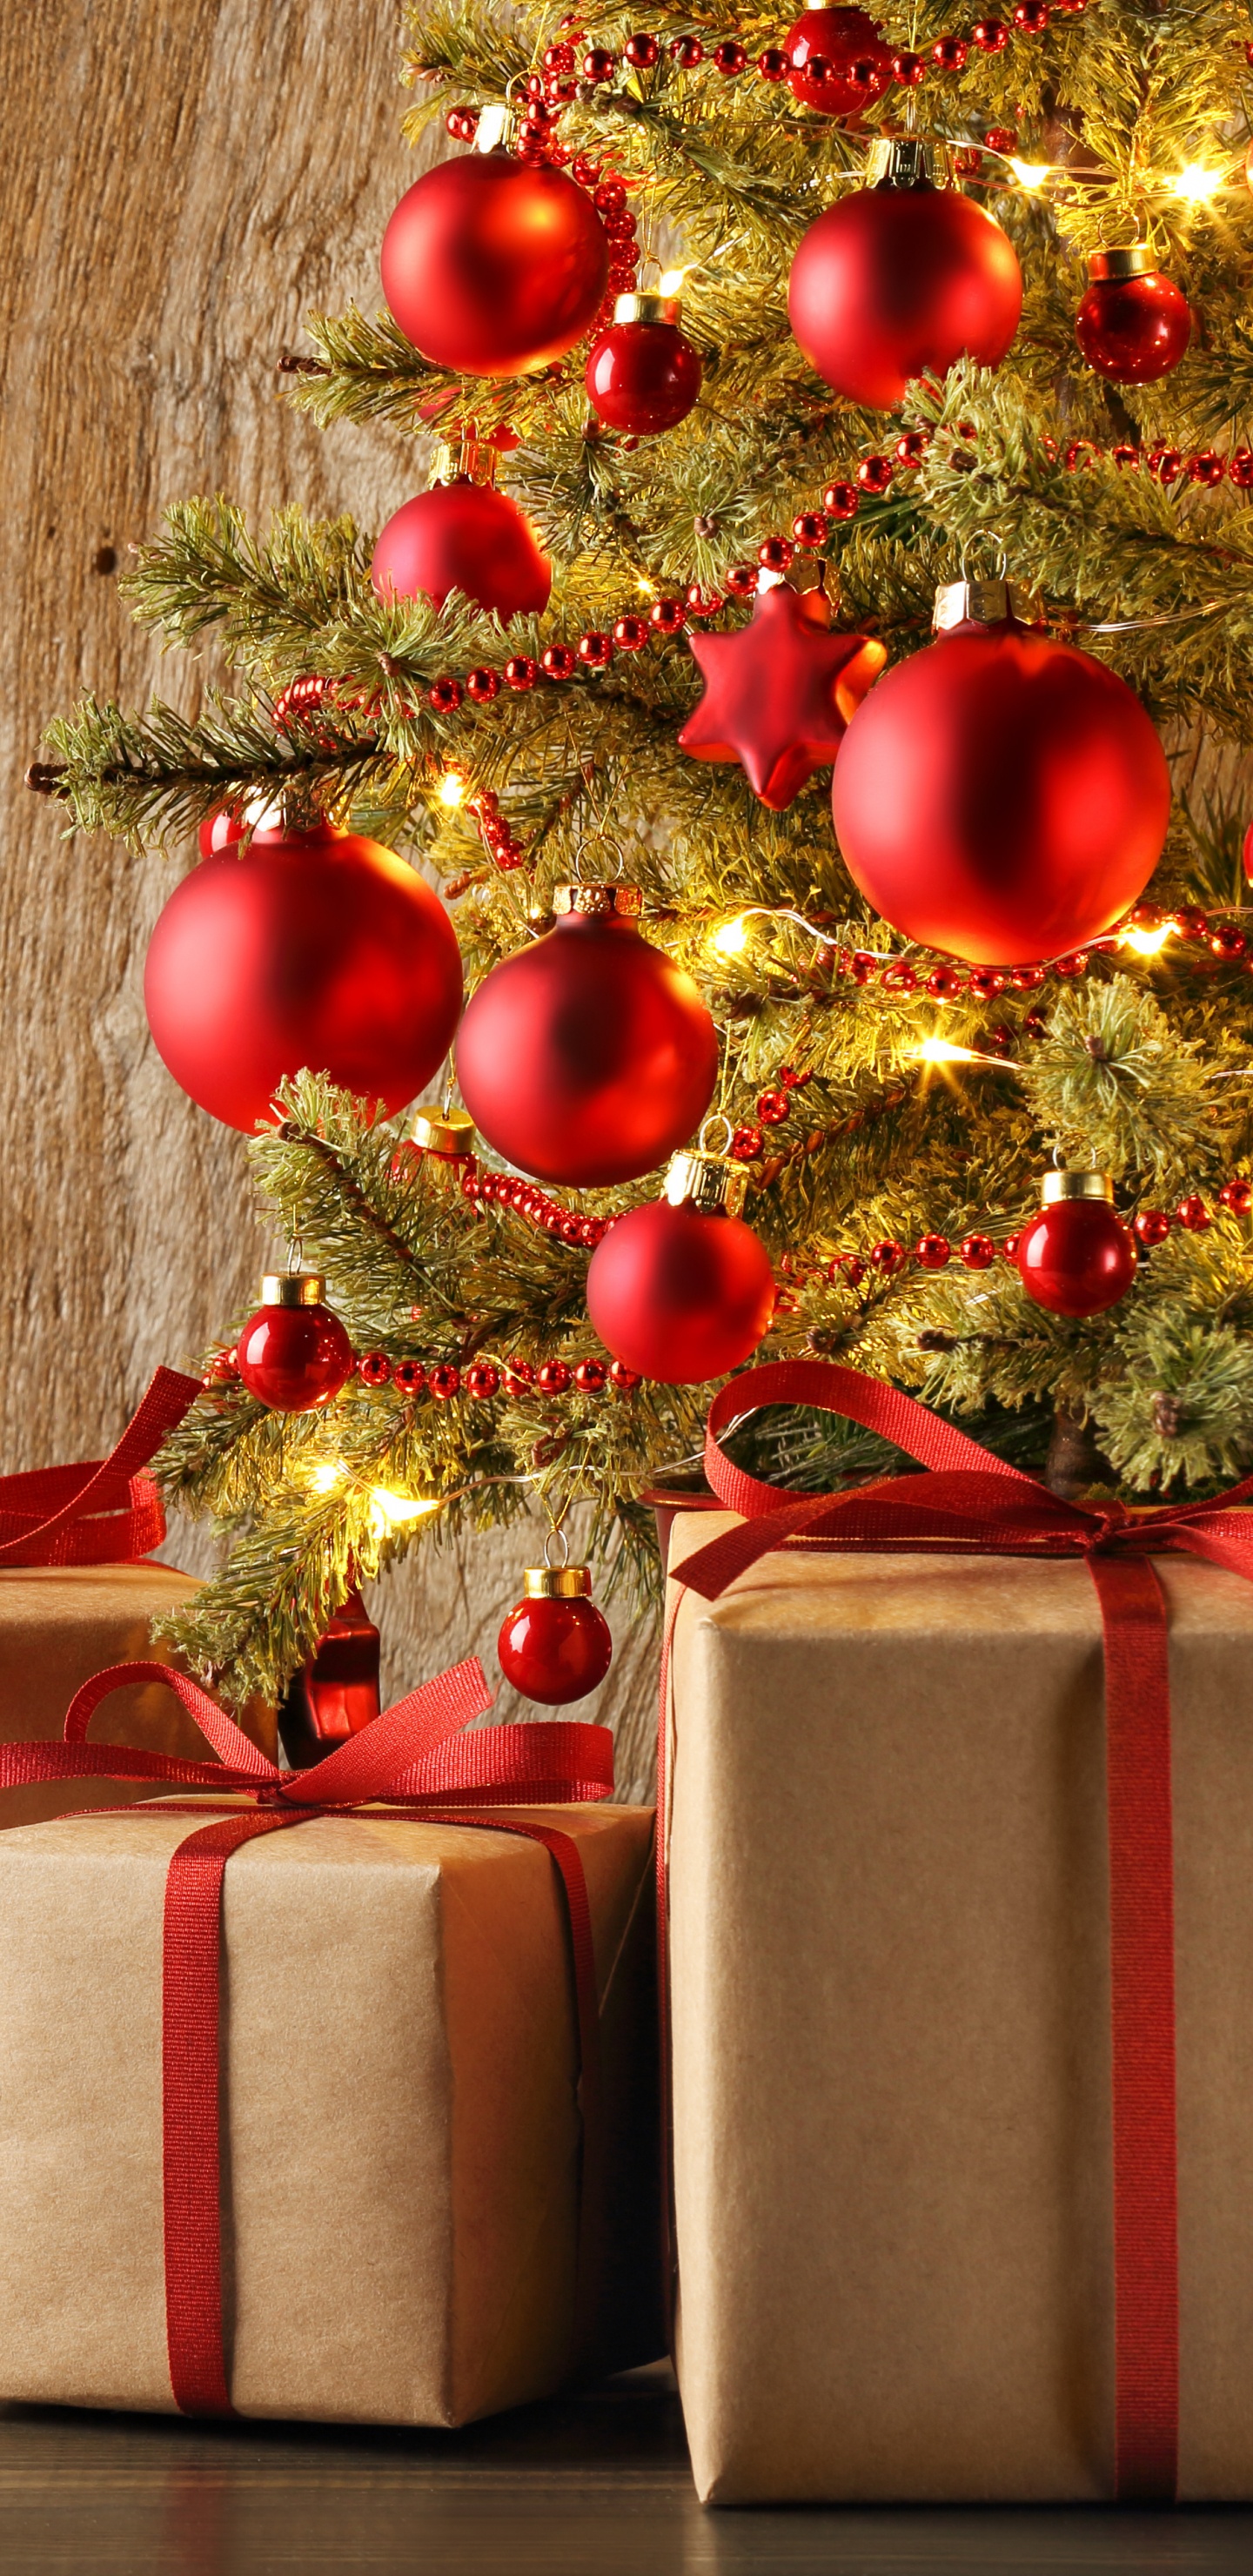 Weihnachten, Geschenk, Christmas Ornament, Geschenkpapier, Neujahr. Wallpaper in 1440x2960 Resolution